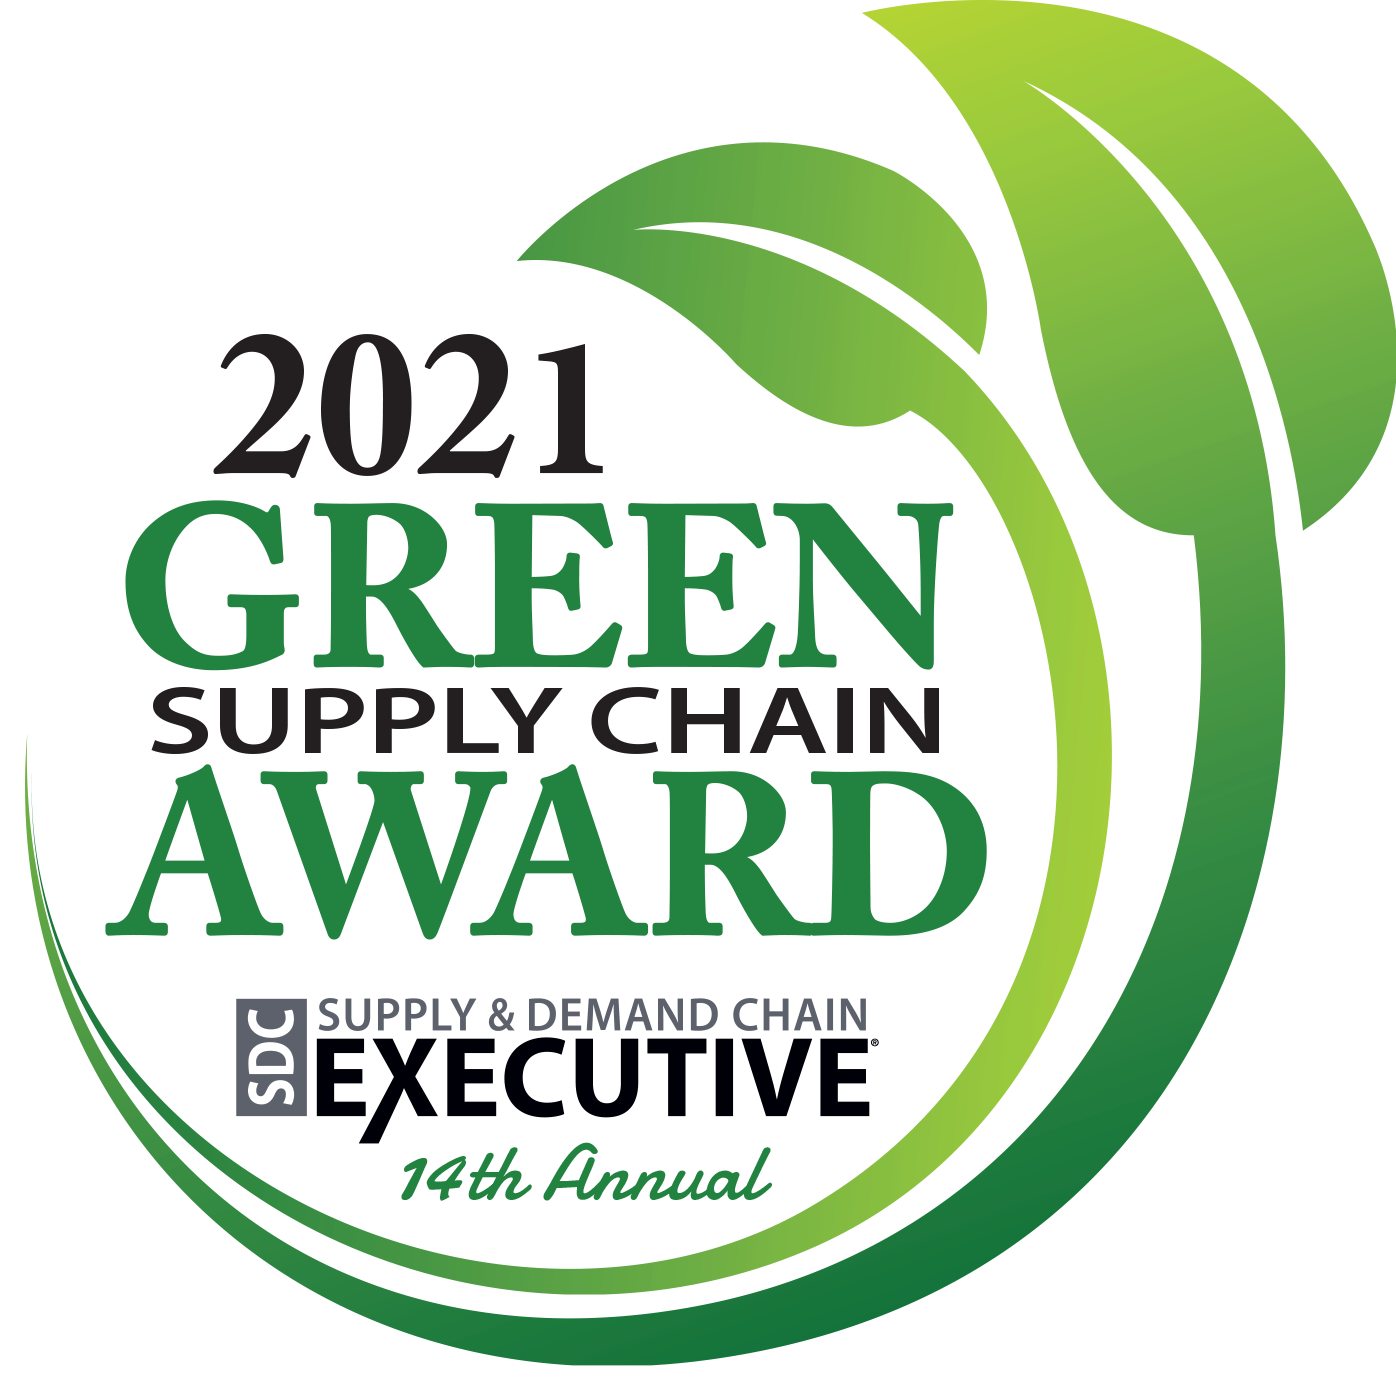 2021 Green Supply Chain Award logo.